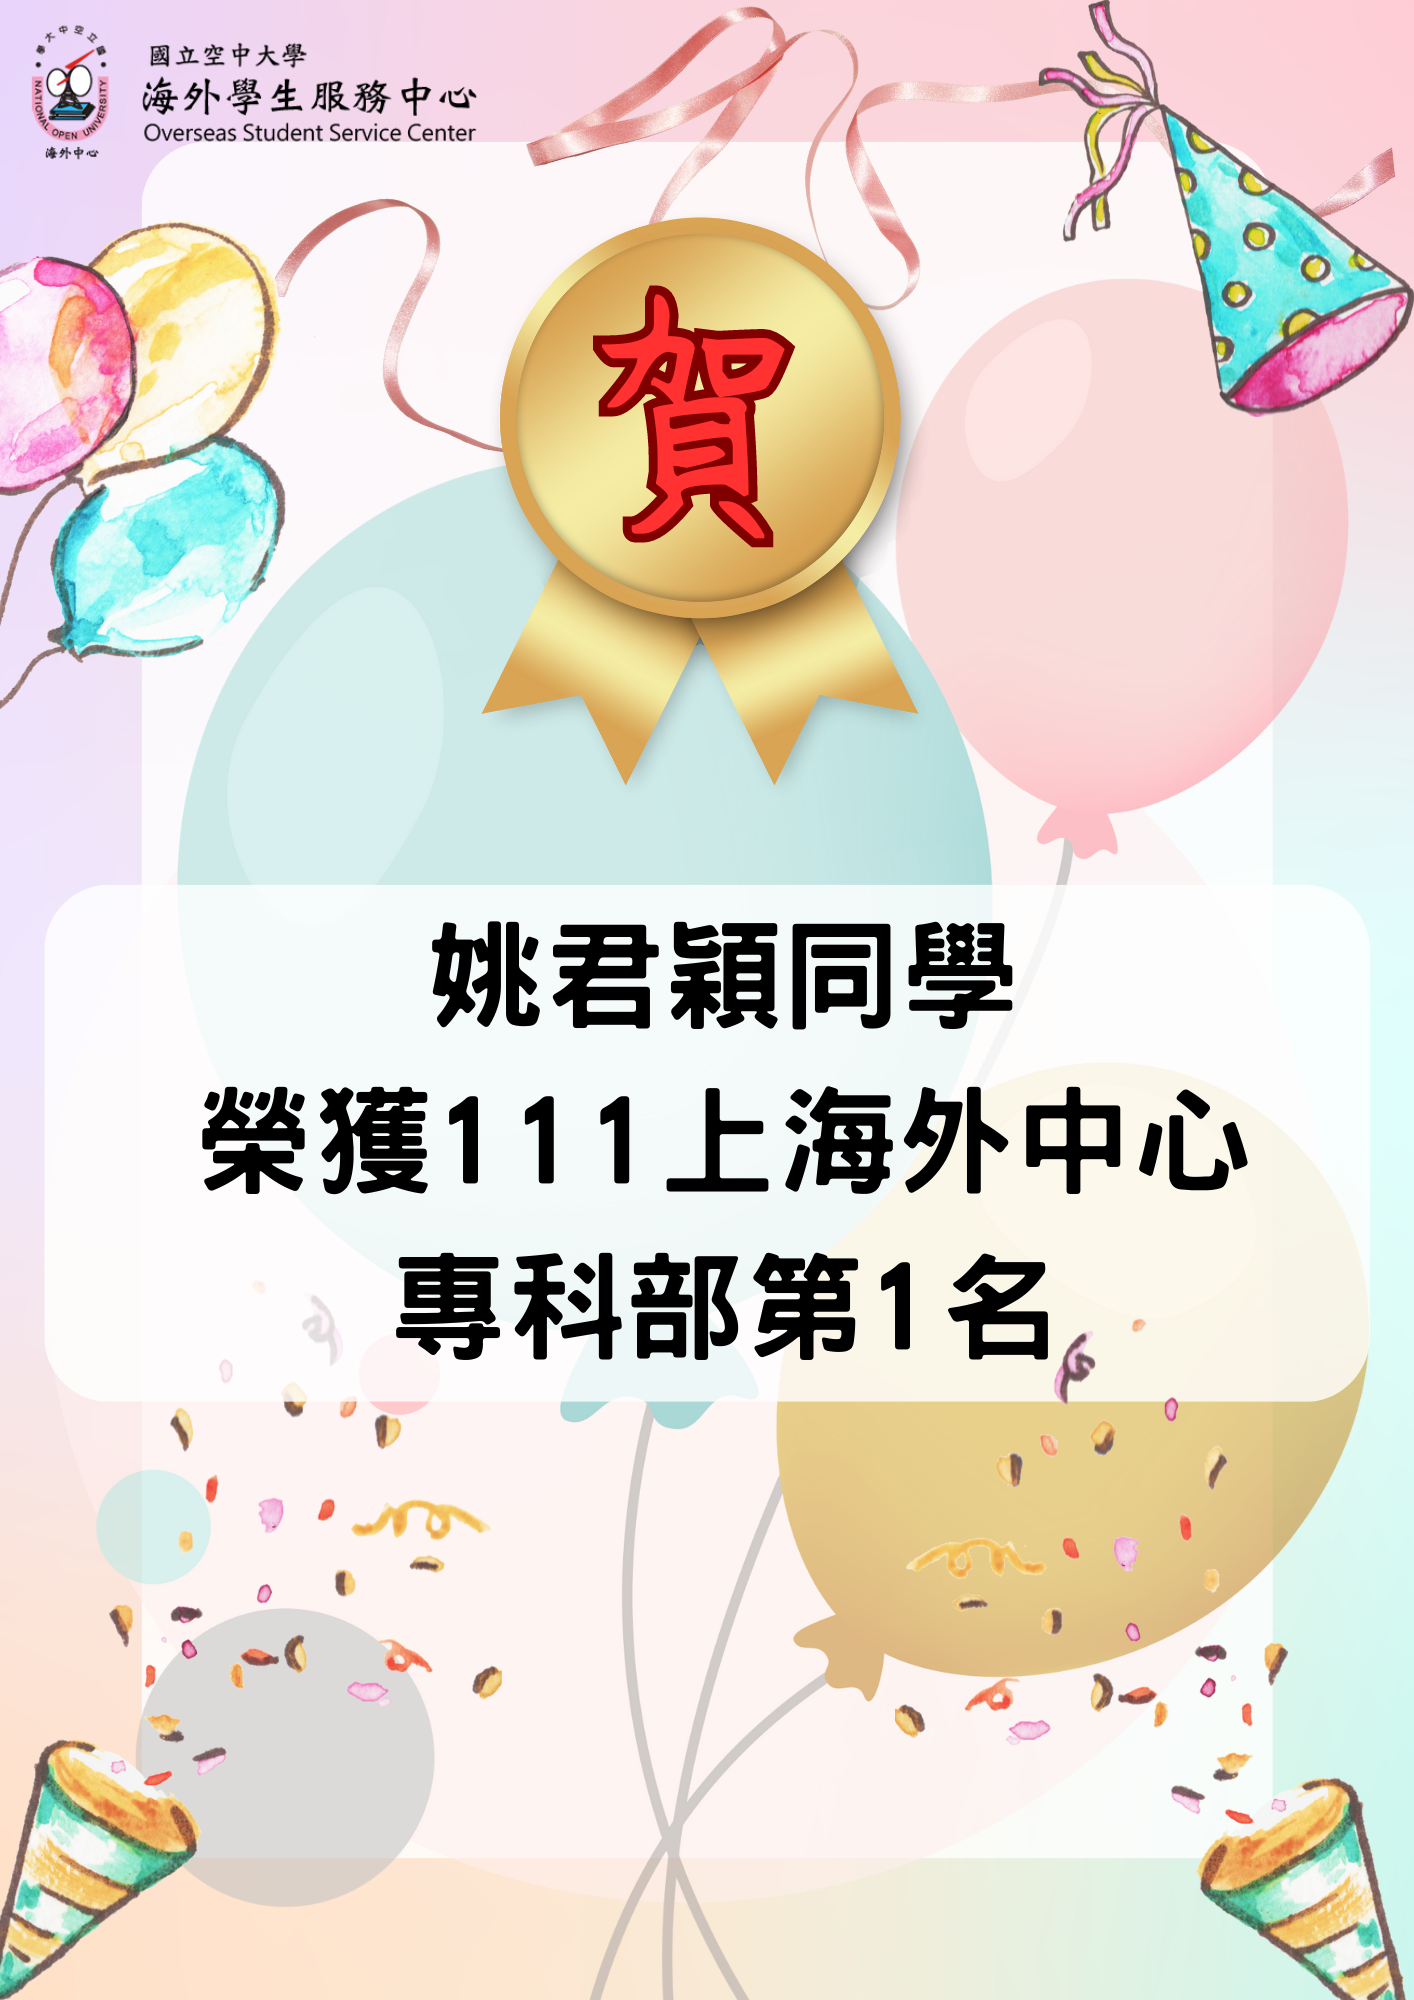 姚君穎同學 榮獲111上海外中心 專科部第1名